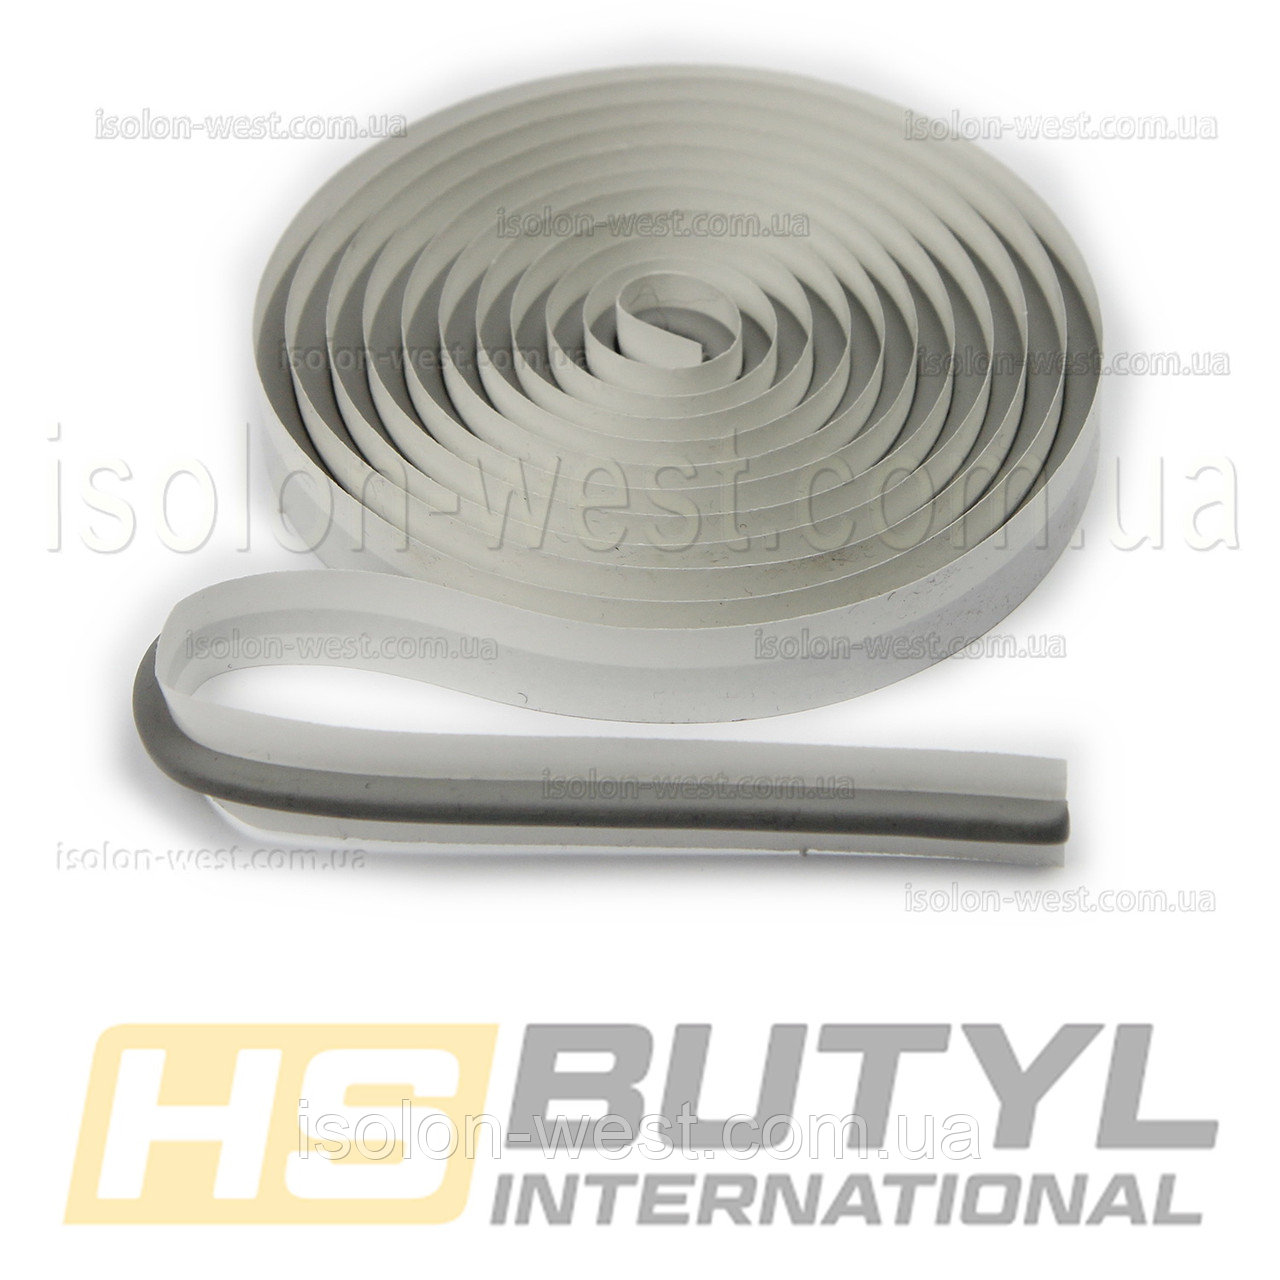 Герметик для автомобильных фар HS butyl (диаметр 5 мм), рулон 2.4 метра детальная фотка